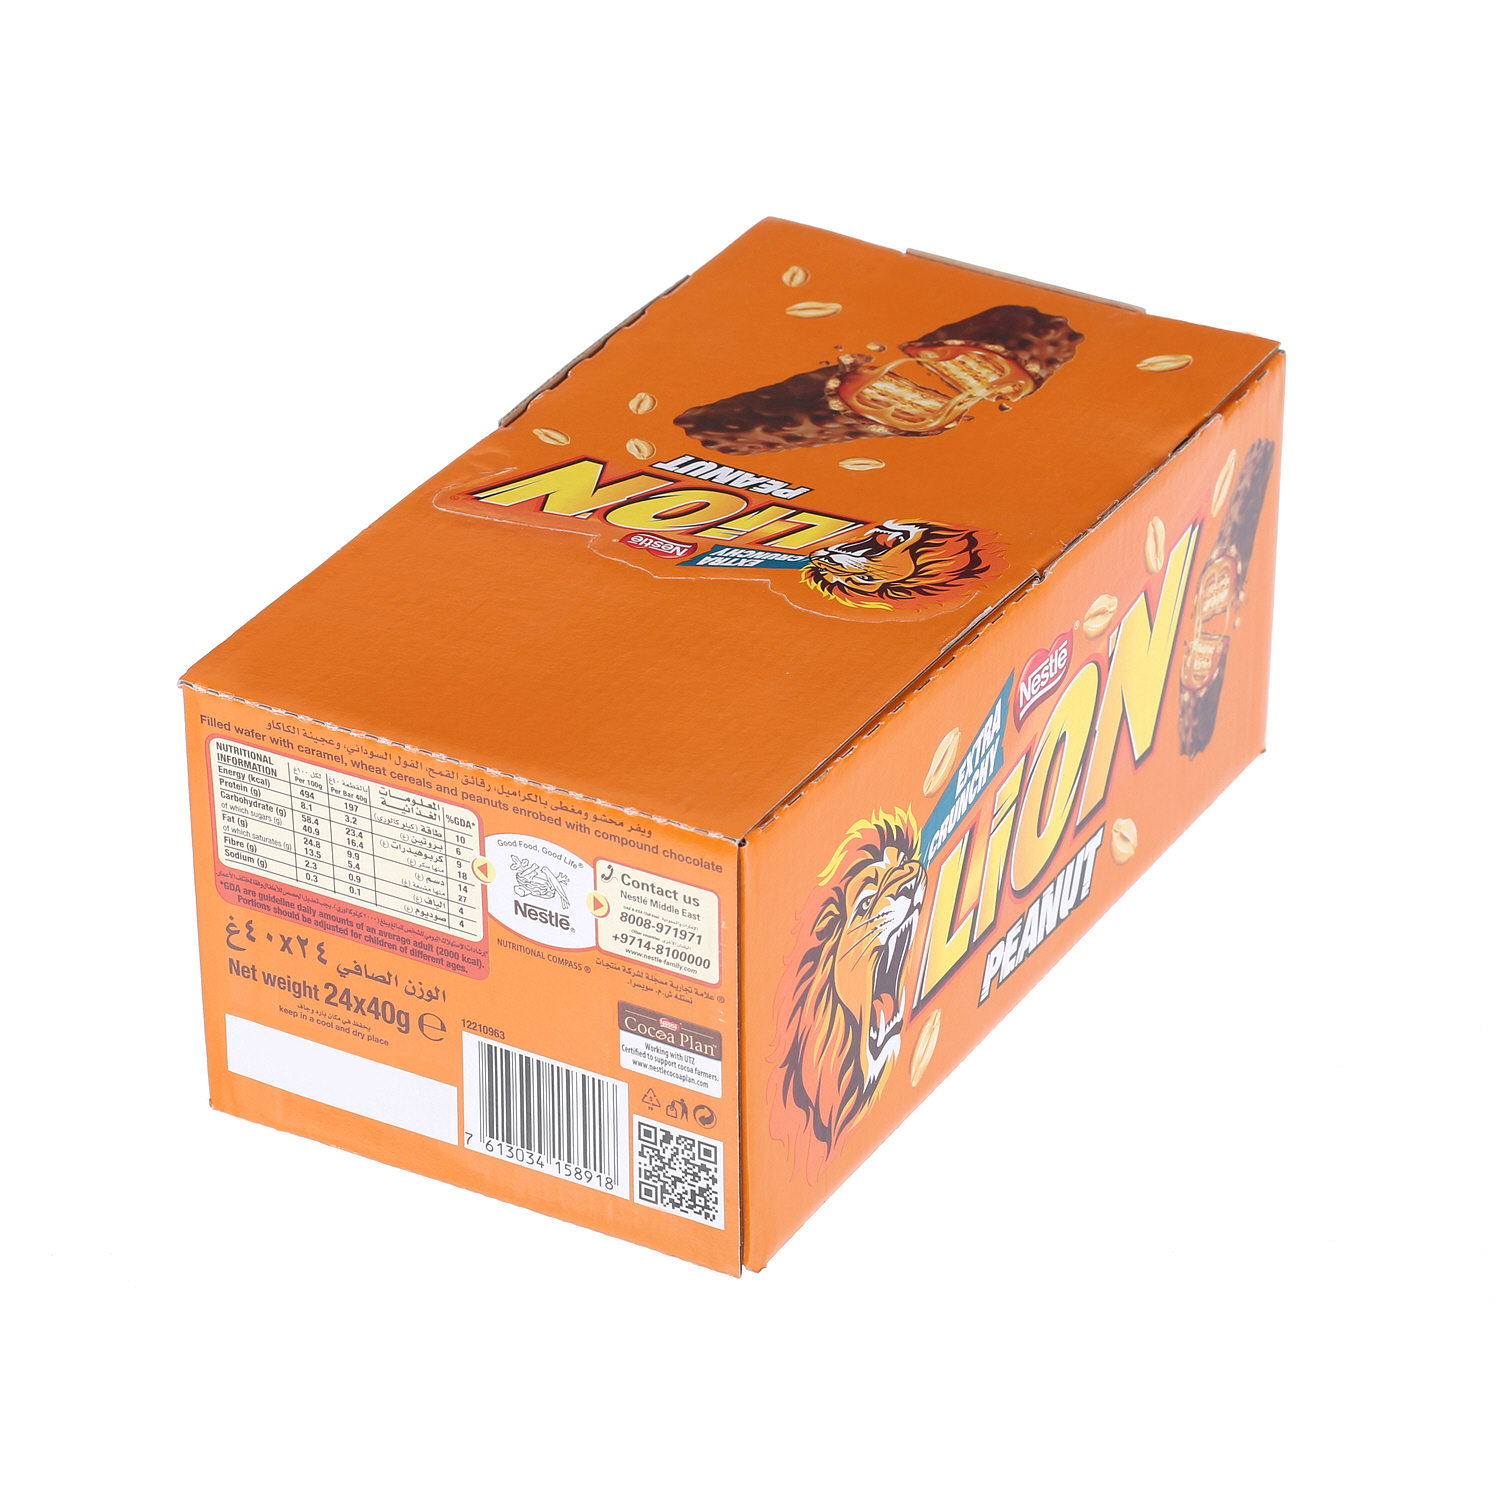 Nestlé Lion Bar Peanut 40gm × 24'S